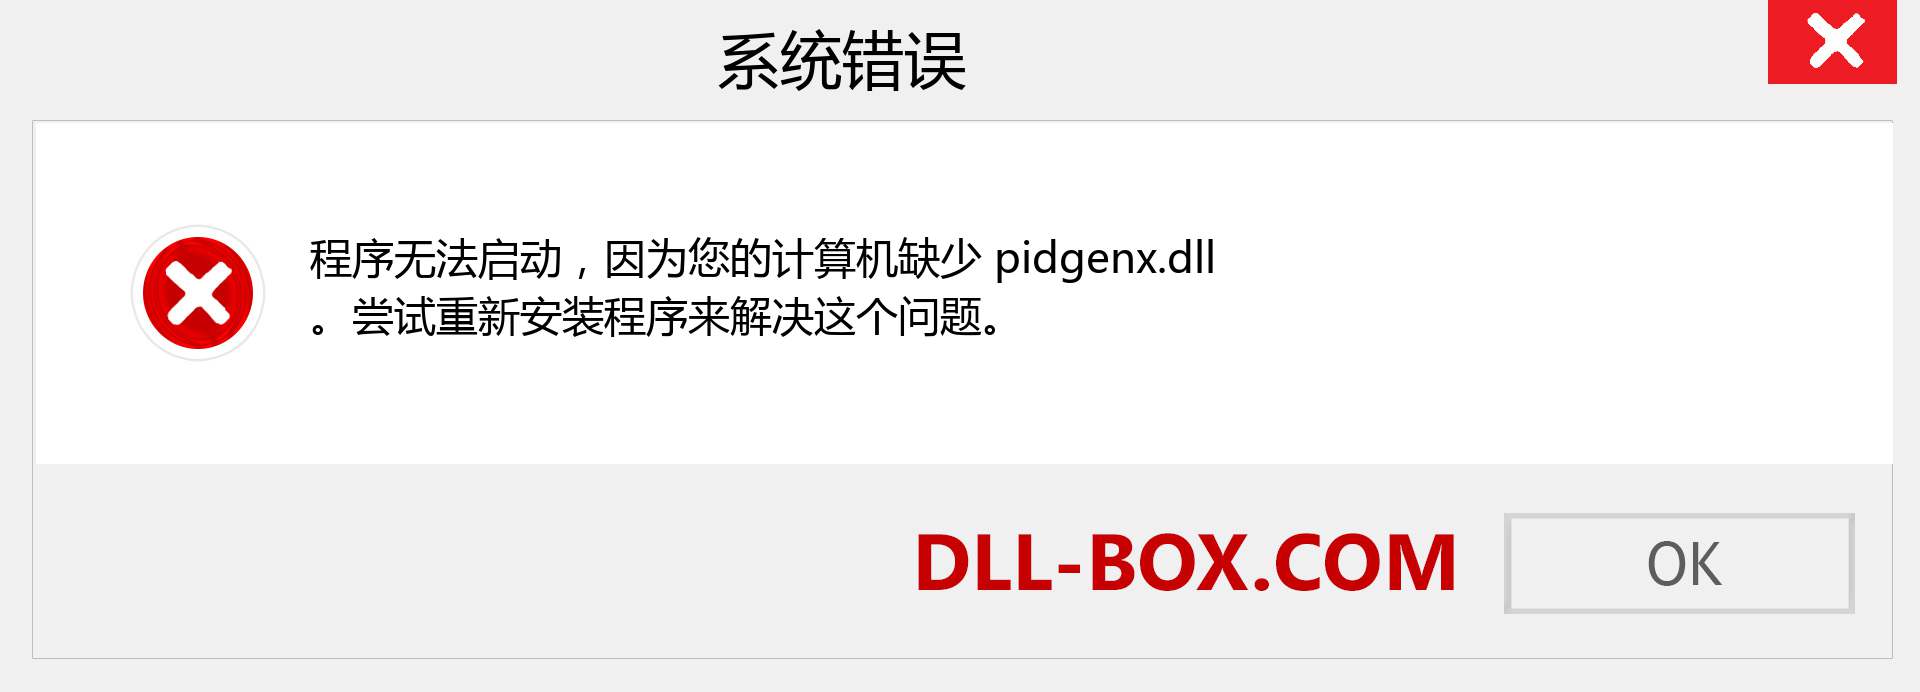 pidgenx.dll 文件丢失？。 适用于 Windows 7、8、10 的下载 - 修复 Windows、照片、图像上的 pidgenx dll 丢失错误